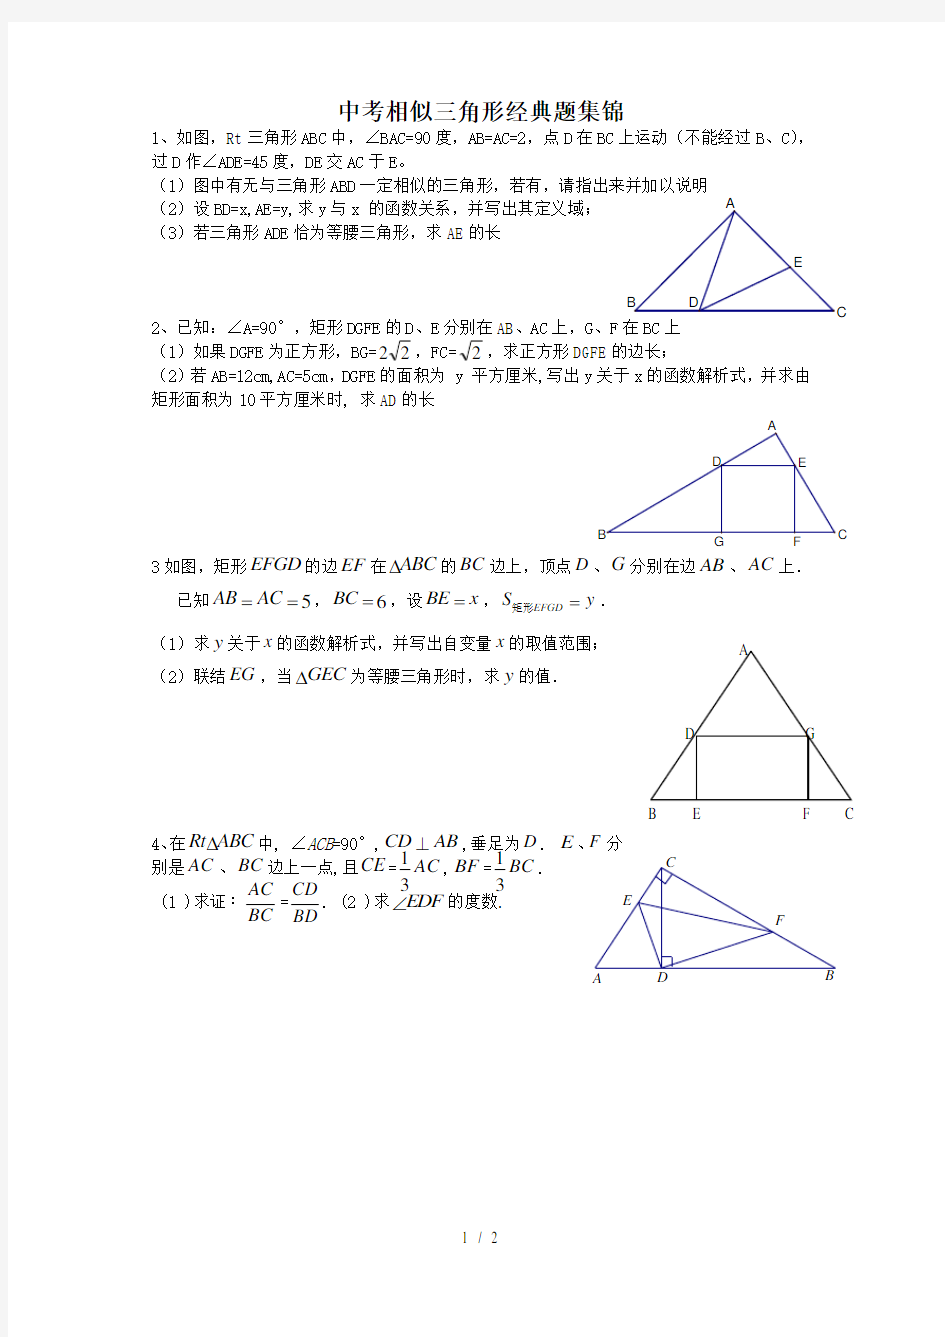 中考相似三角形经典题集锦[001]